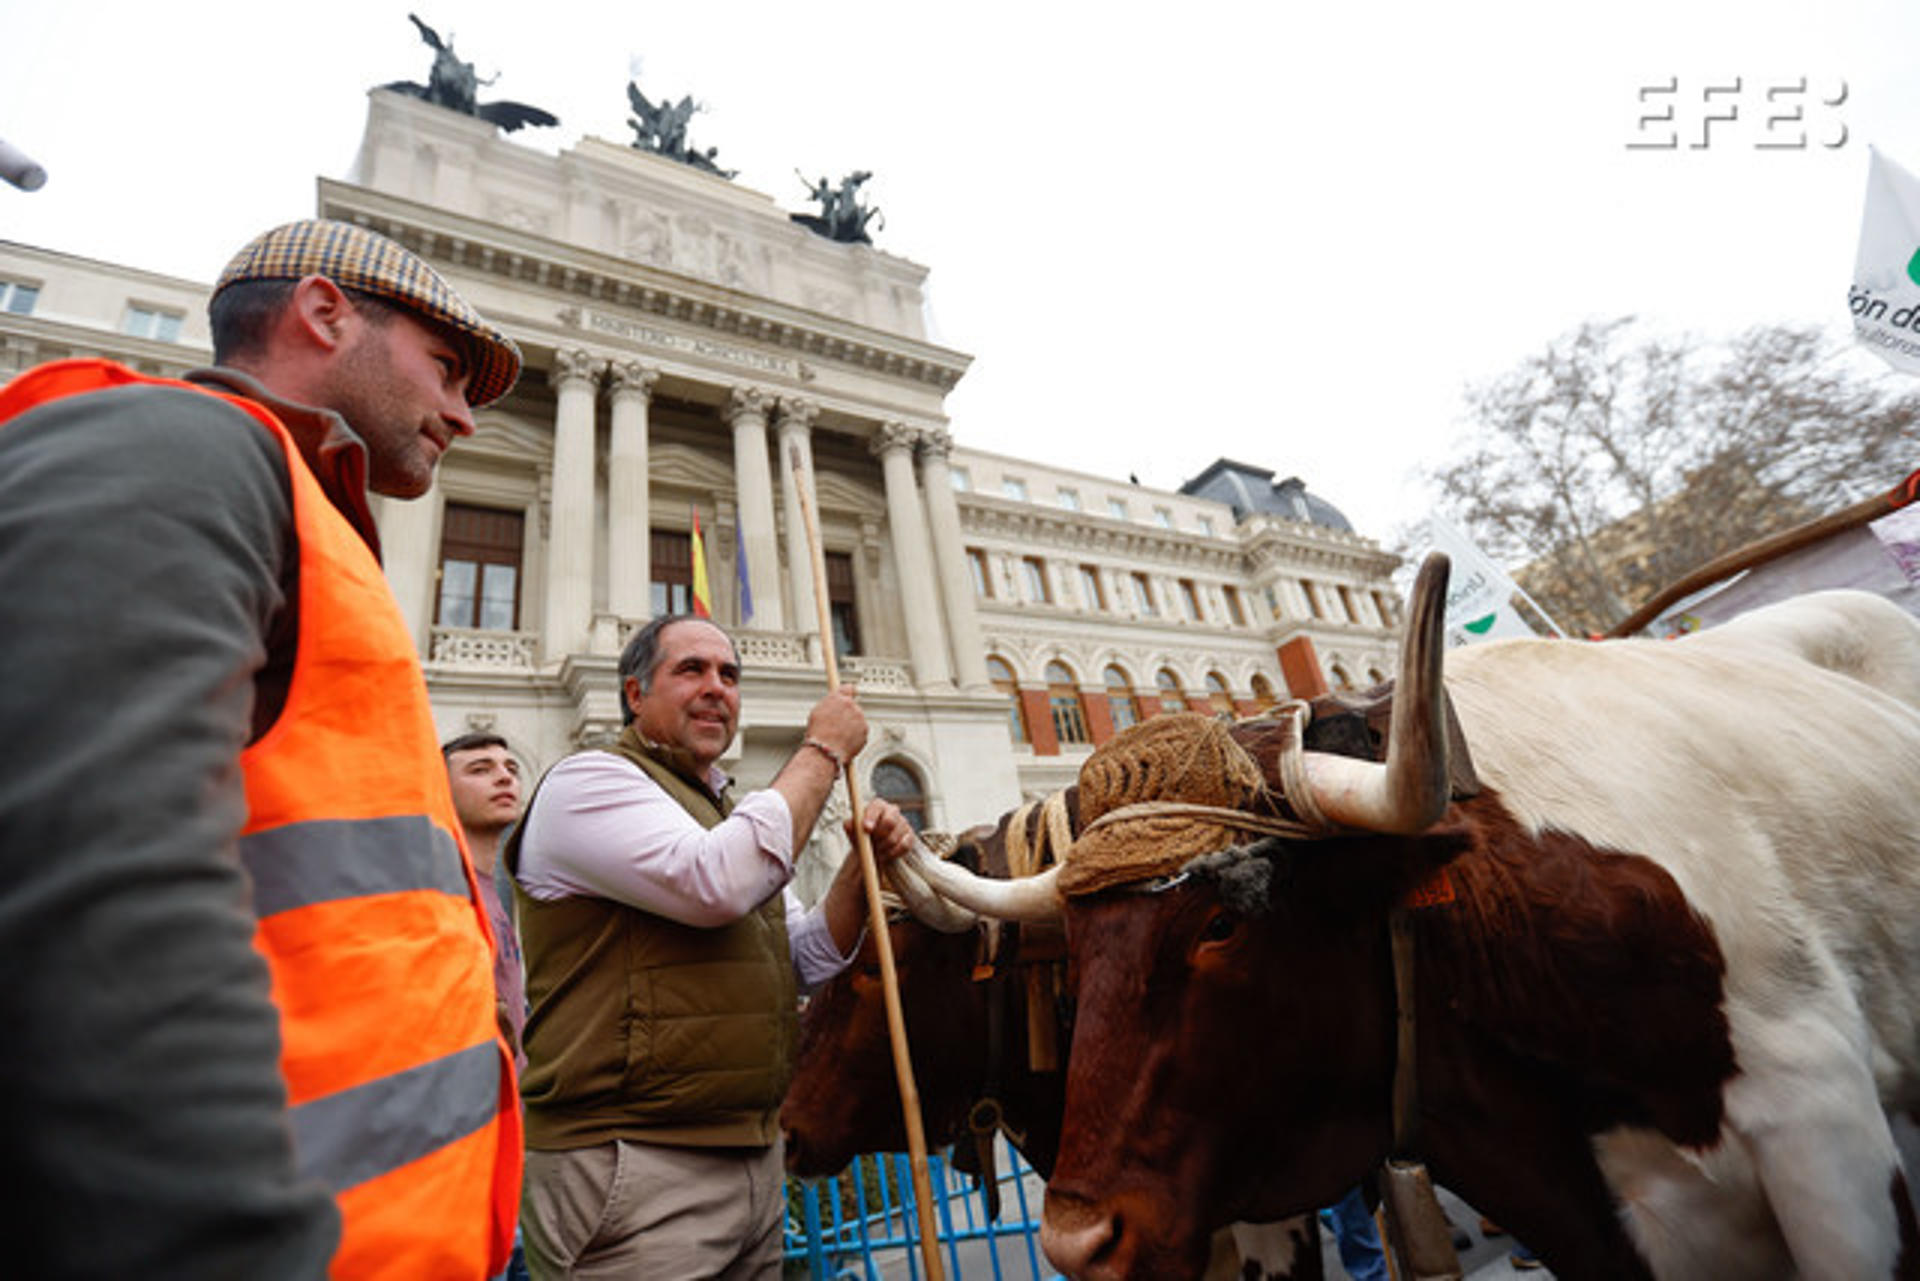 Fotografía de la protesta de agricultores llegados desde distintos puntos con sus tractores este miércoles en el centro de Madrid, en una marcha que concluye frente al Ministerio de Agricultura, Pesca y Alimentación. EFE/ J P GANDUL